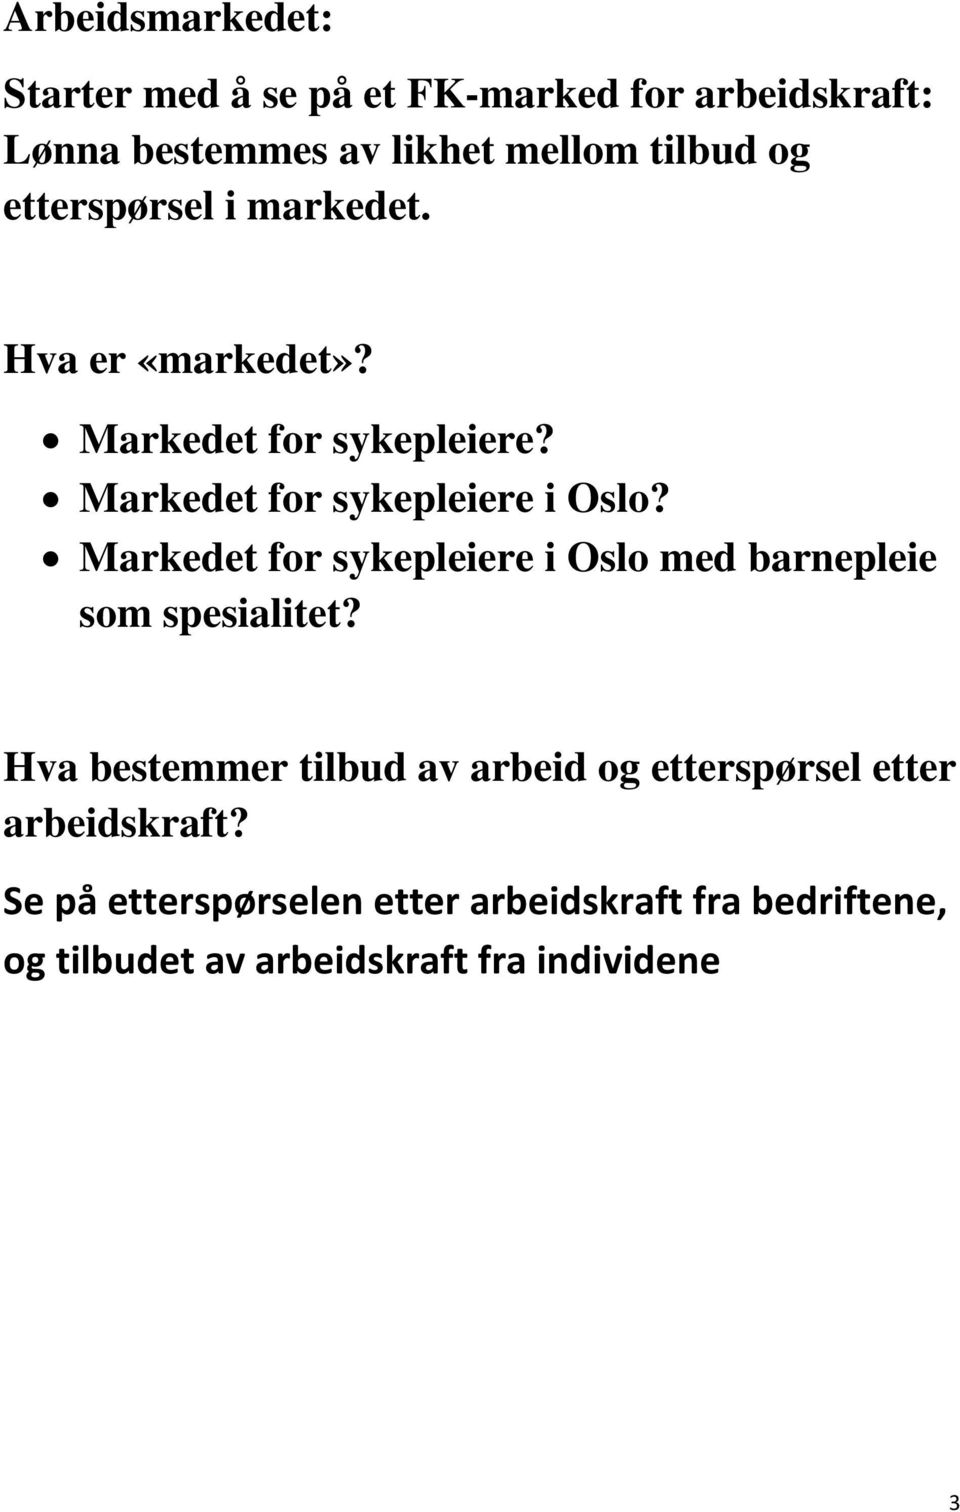 Markedet for sykepleiere i Oslo med barnepleie som spesialitet?